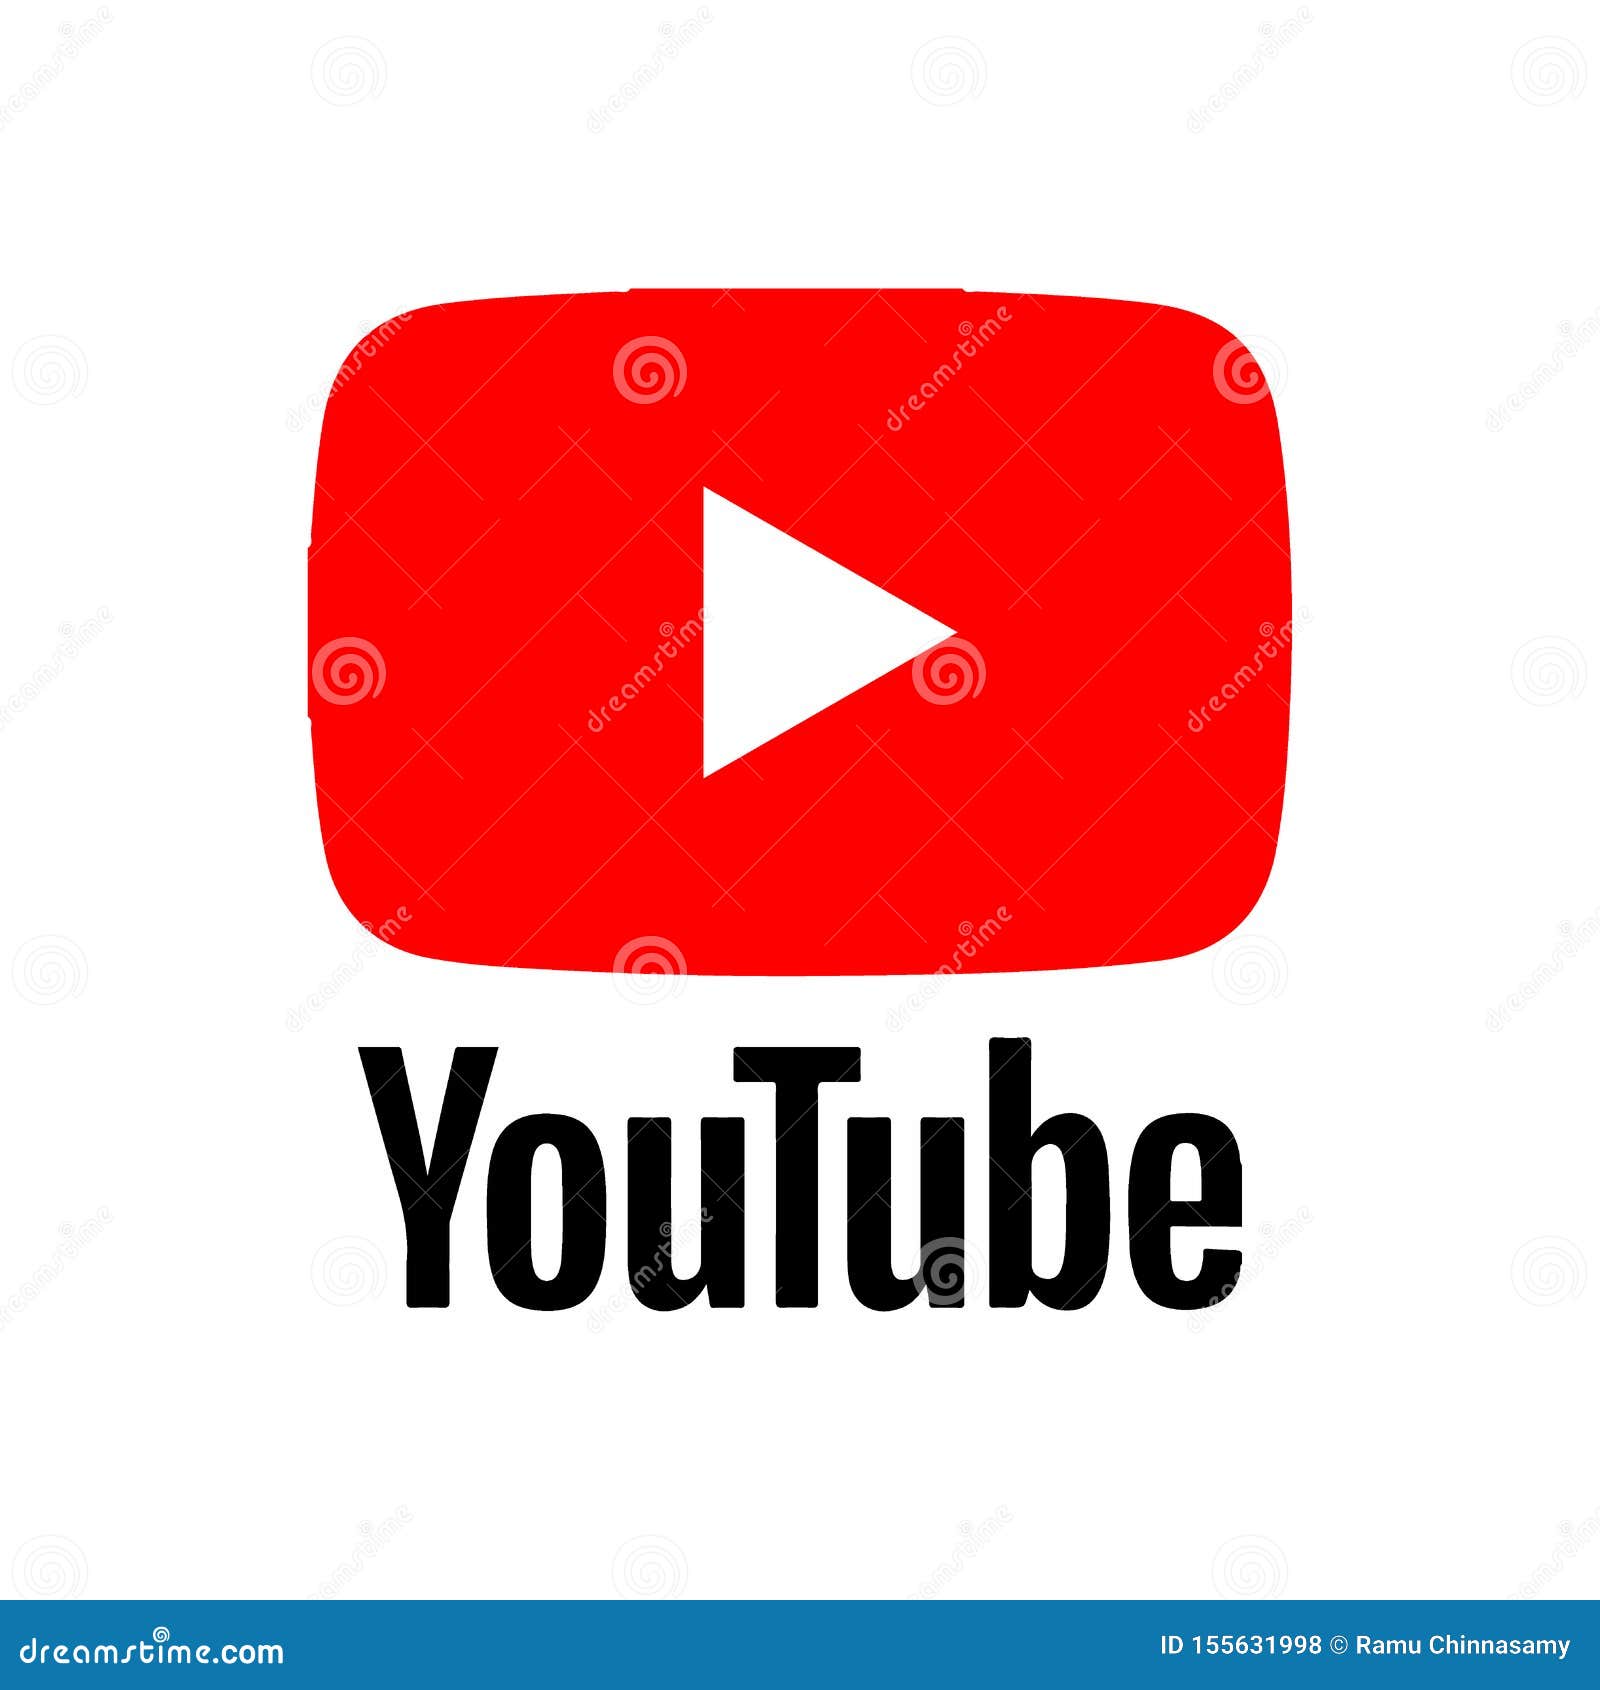 Youtube đã trở thành một thành phần vô cùng quan trọng trong cuộc sống hàng ngày của chúng ta. Hãy bấm vào hình ảnh để chiêm ngưỡng logo Youtube và khám phá nhiều video hấp dẫn và bổ ích trên nền tảng này.